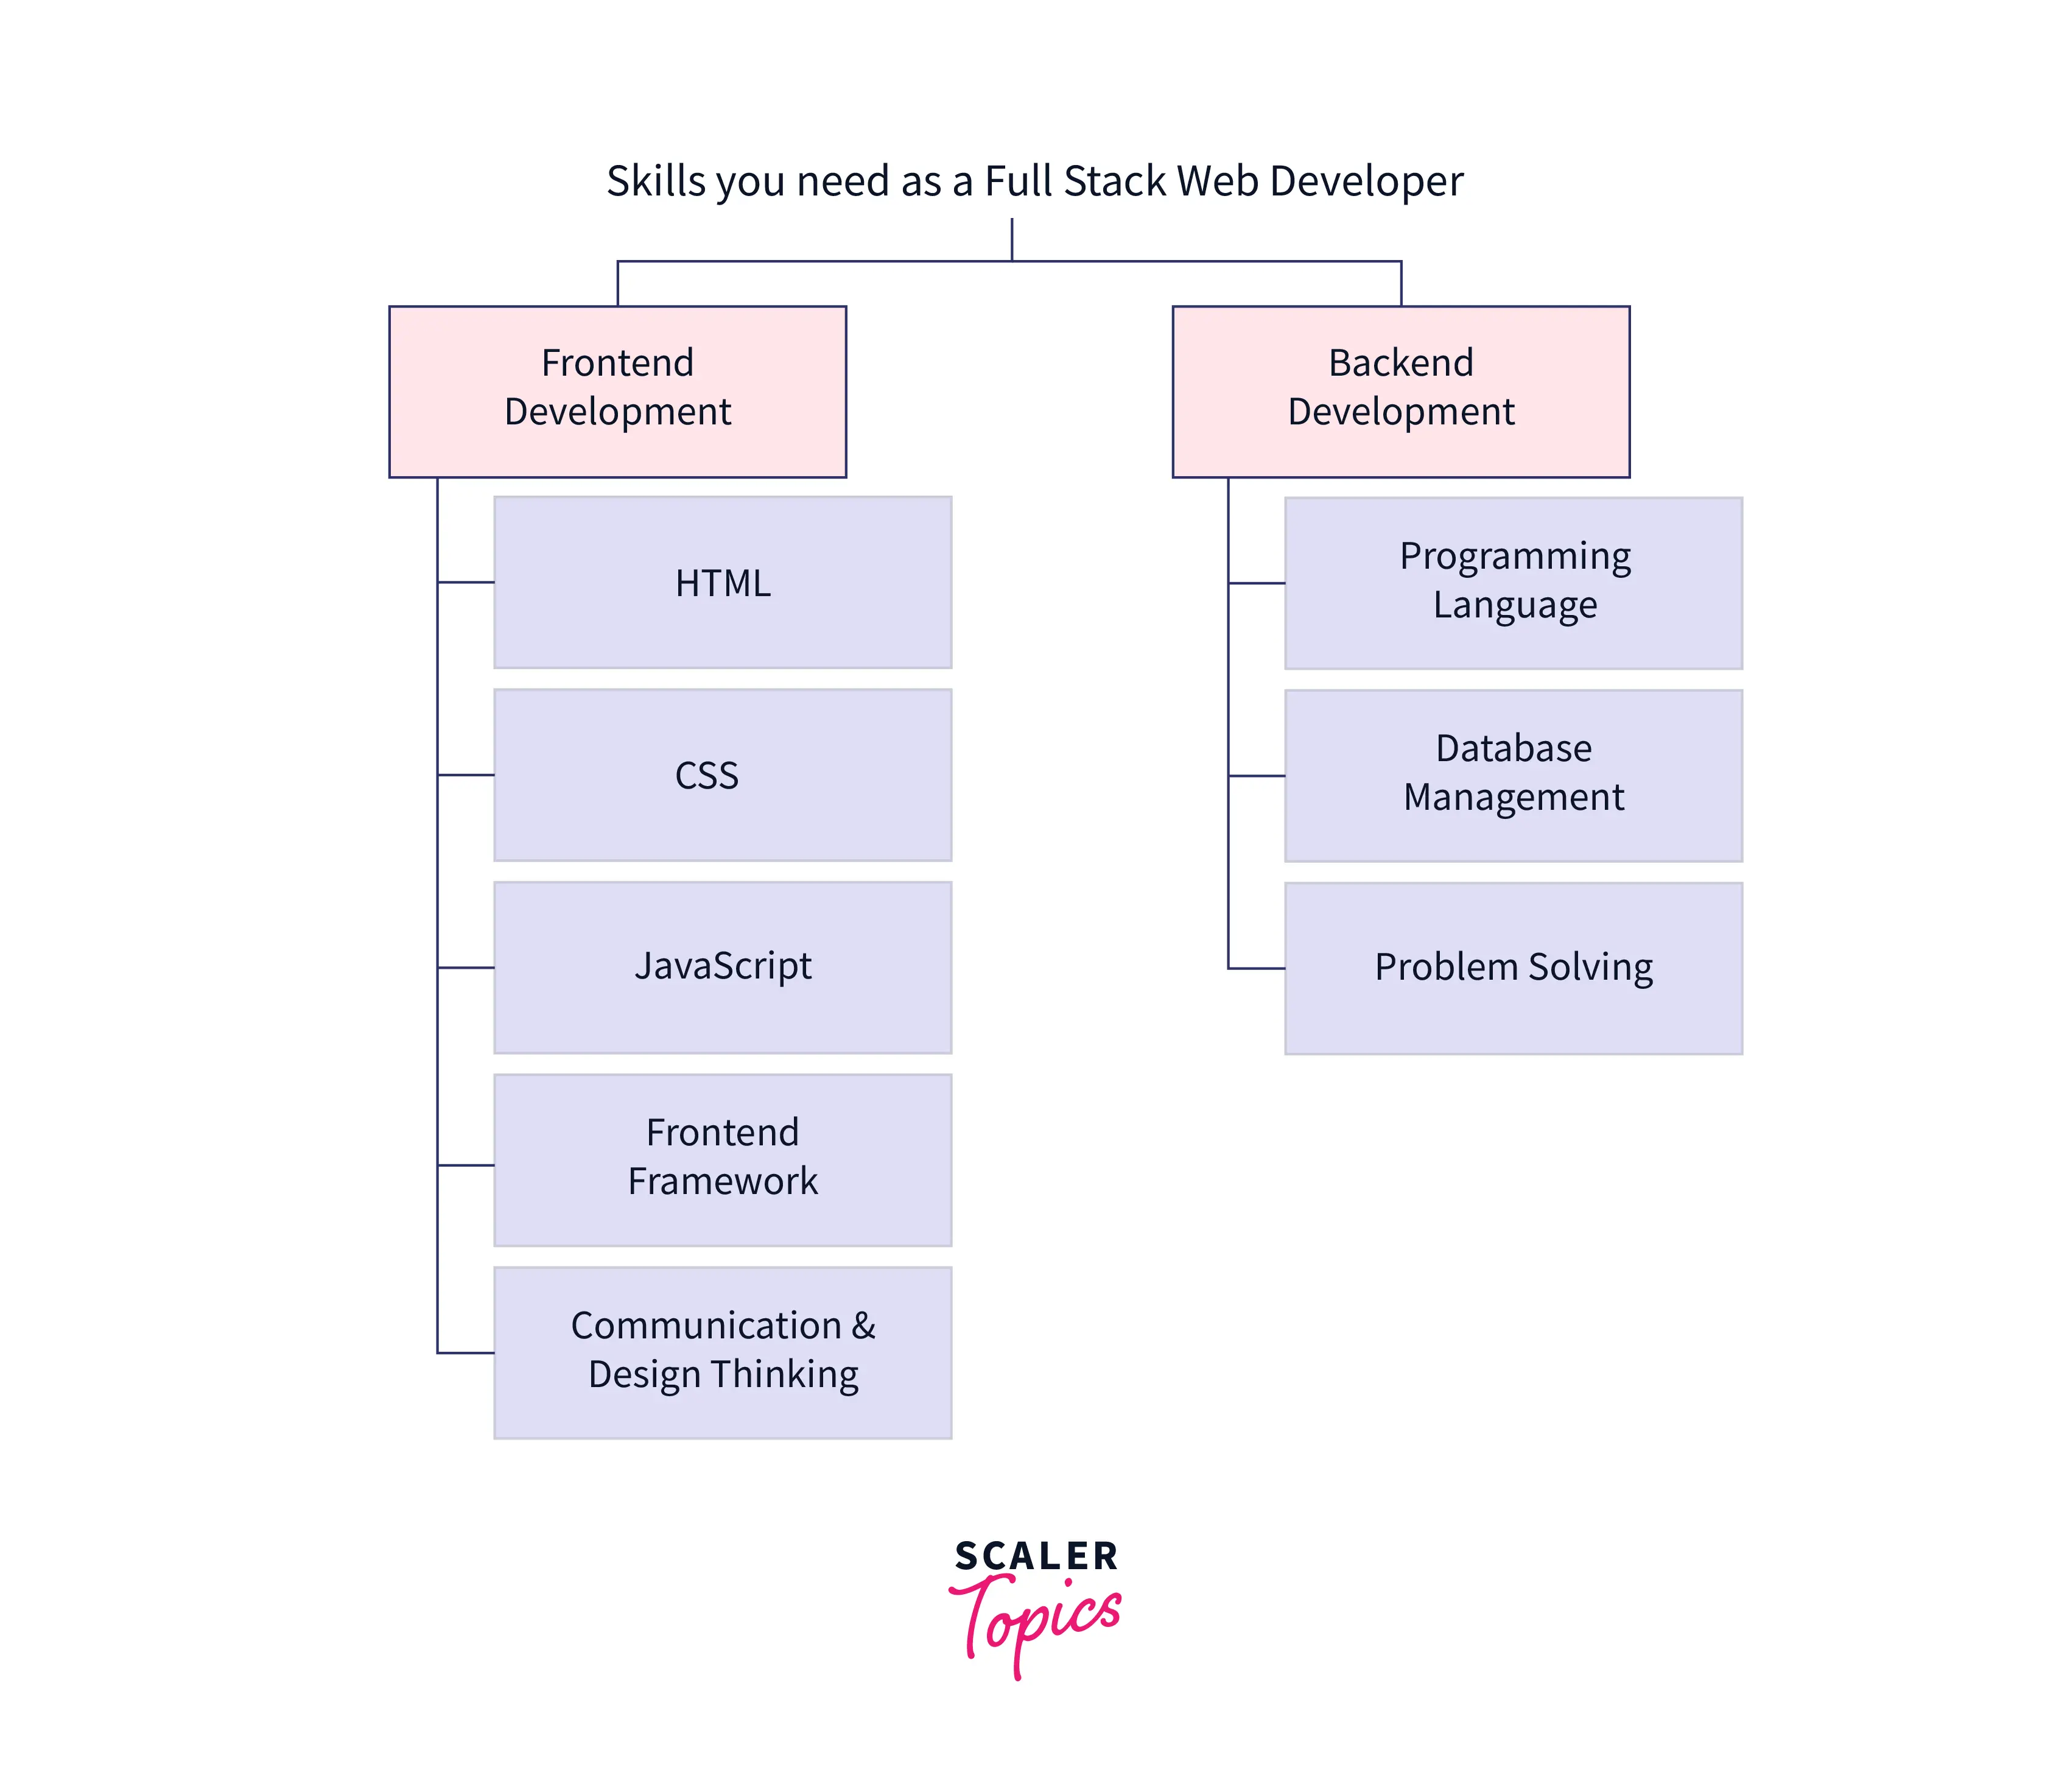 full stack developer skills